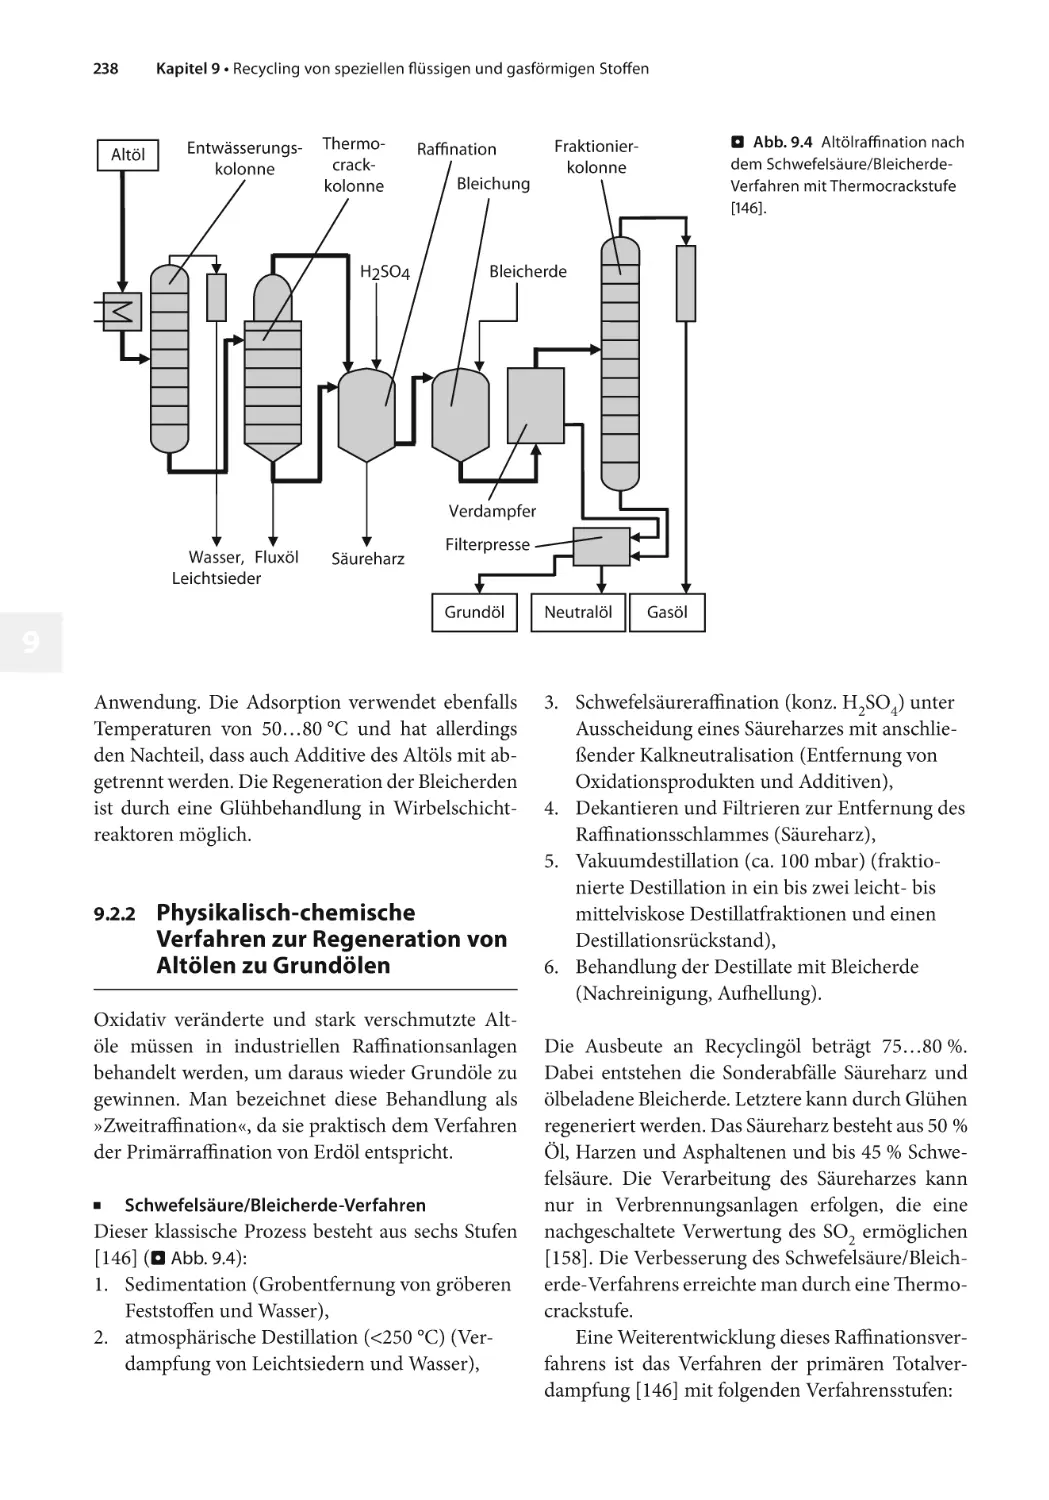 9.2.2 Physikalisch-chemische Verfahren zur Regeneration von Altölen zu Grundölen